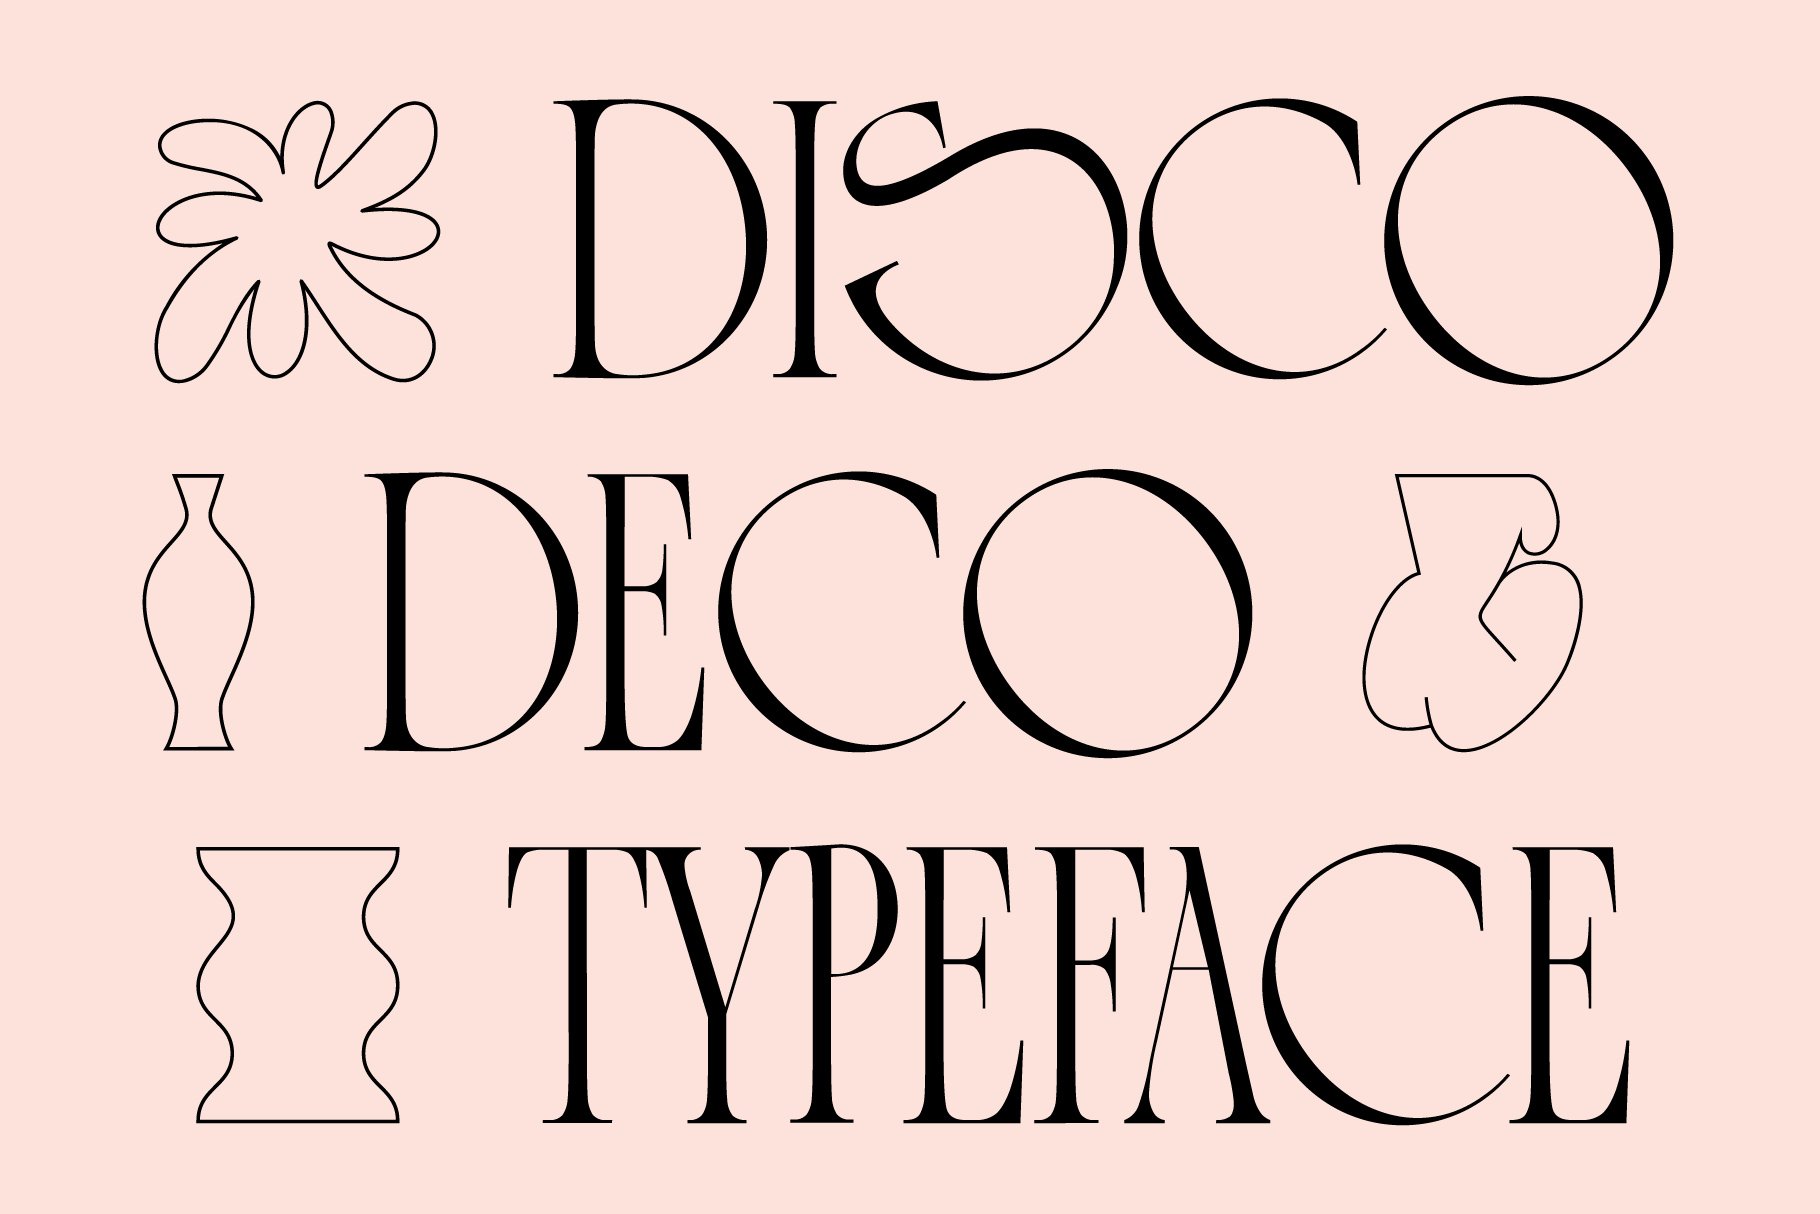 Disco Deco - Graphic Serif Typeface cover image.